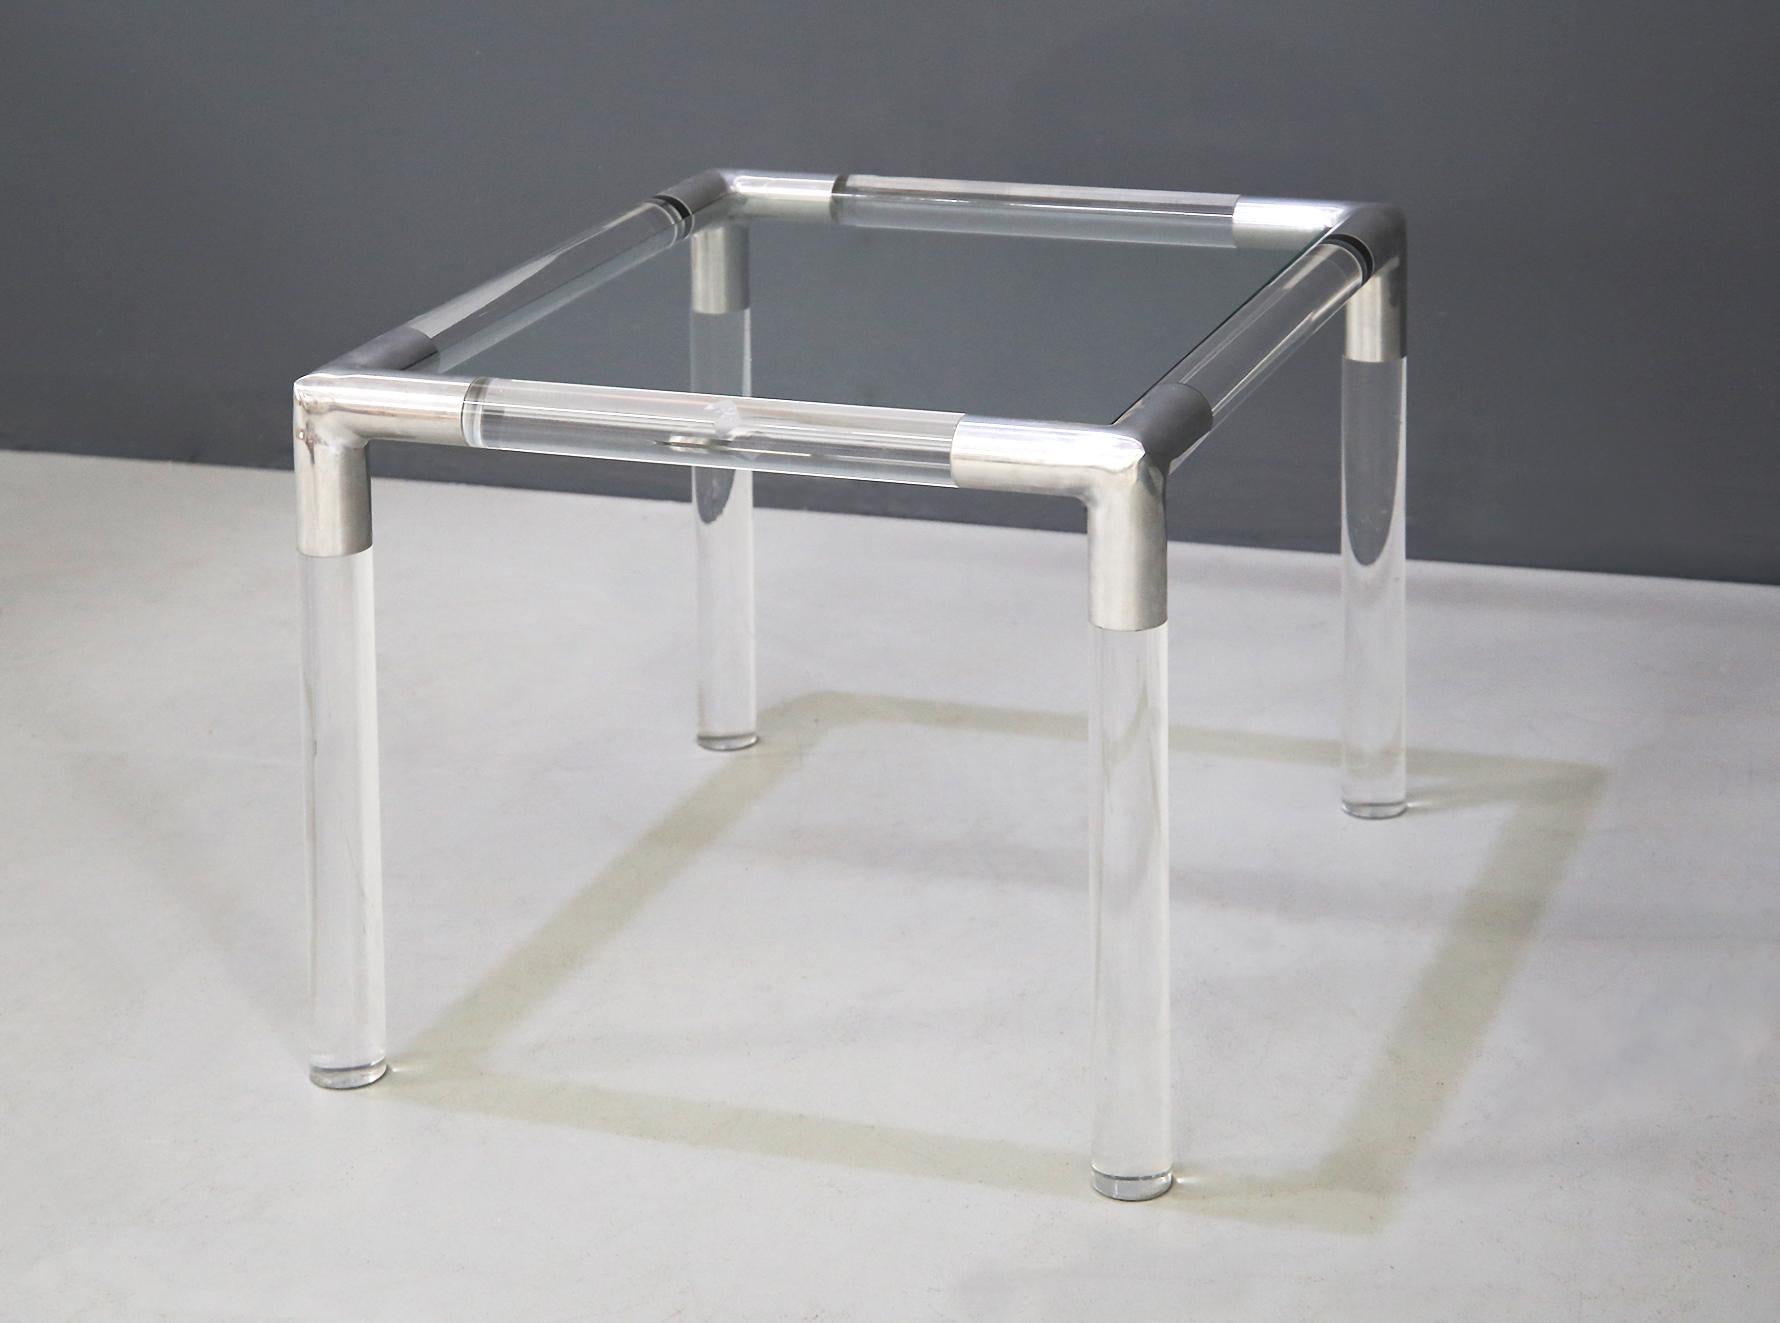 Table basse conçue par Rodney Kinsman pour Bieffeplast, dans les années 1970 au Royaume-Uni. La structure est en plexiglas tubulaire, tandis que les joints reliant les différents points de la structure en plexiglas sont en acier gris métallisé. La